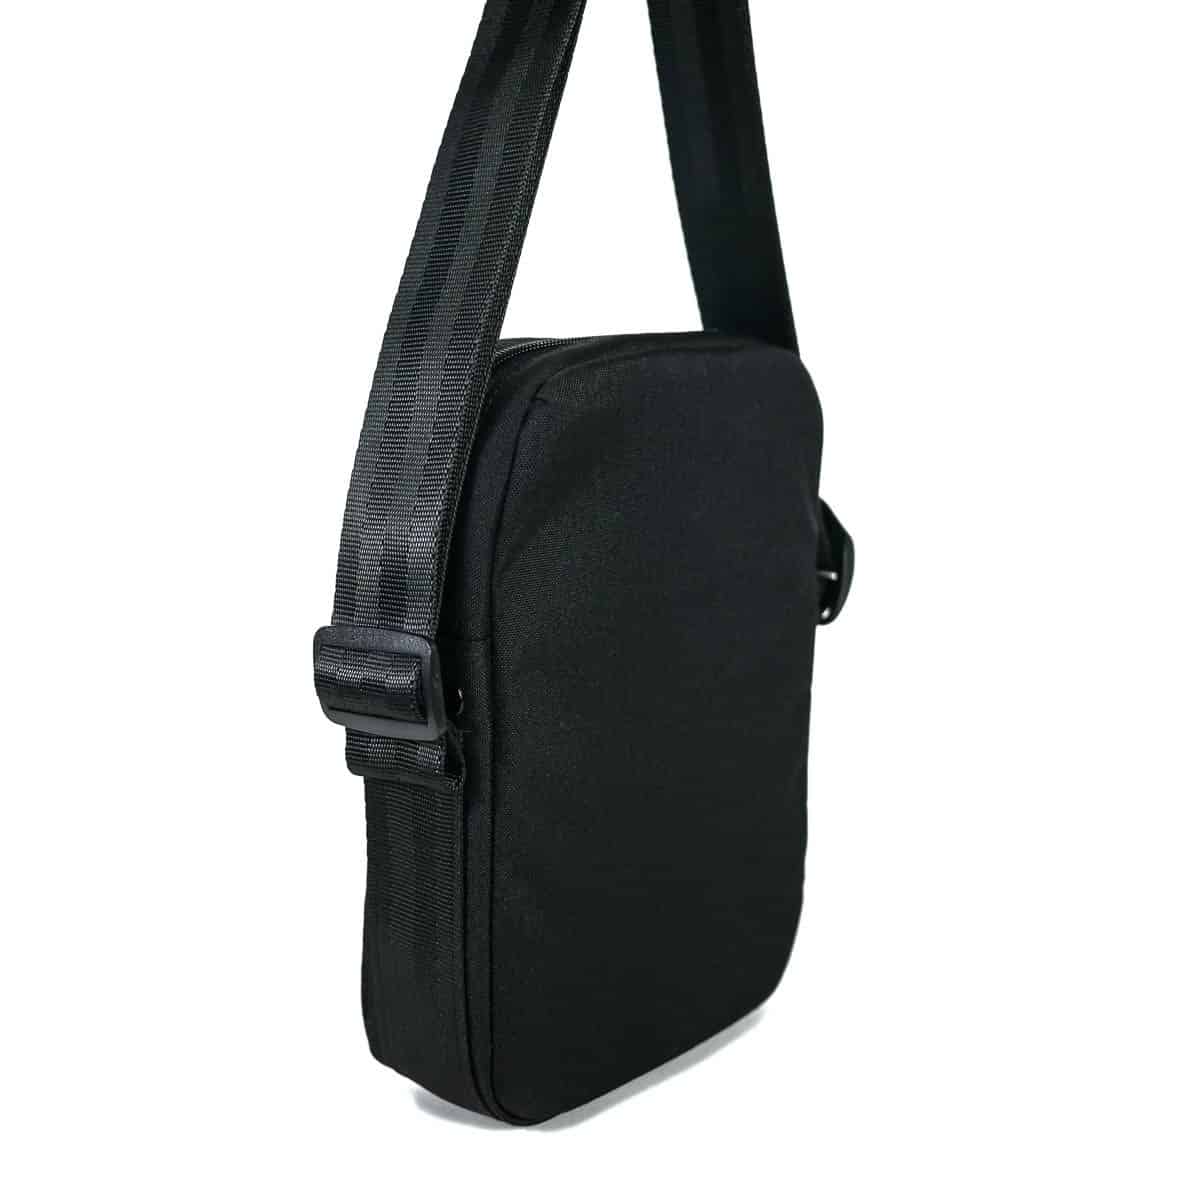 1-hour Sling Bag DIGITAL Pattern -   Sling bag pattern, Hobo bag  patterns, Bag pattern